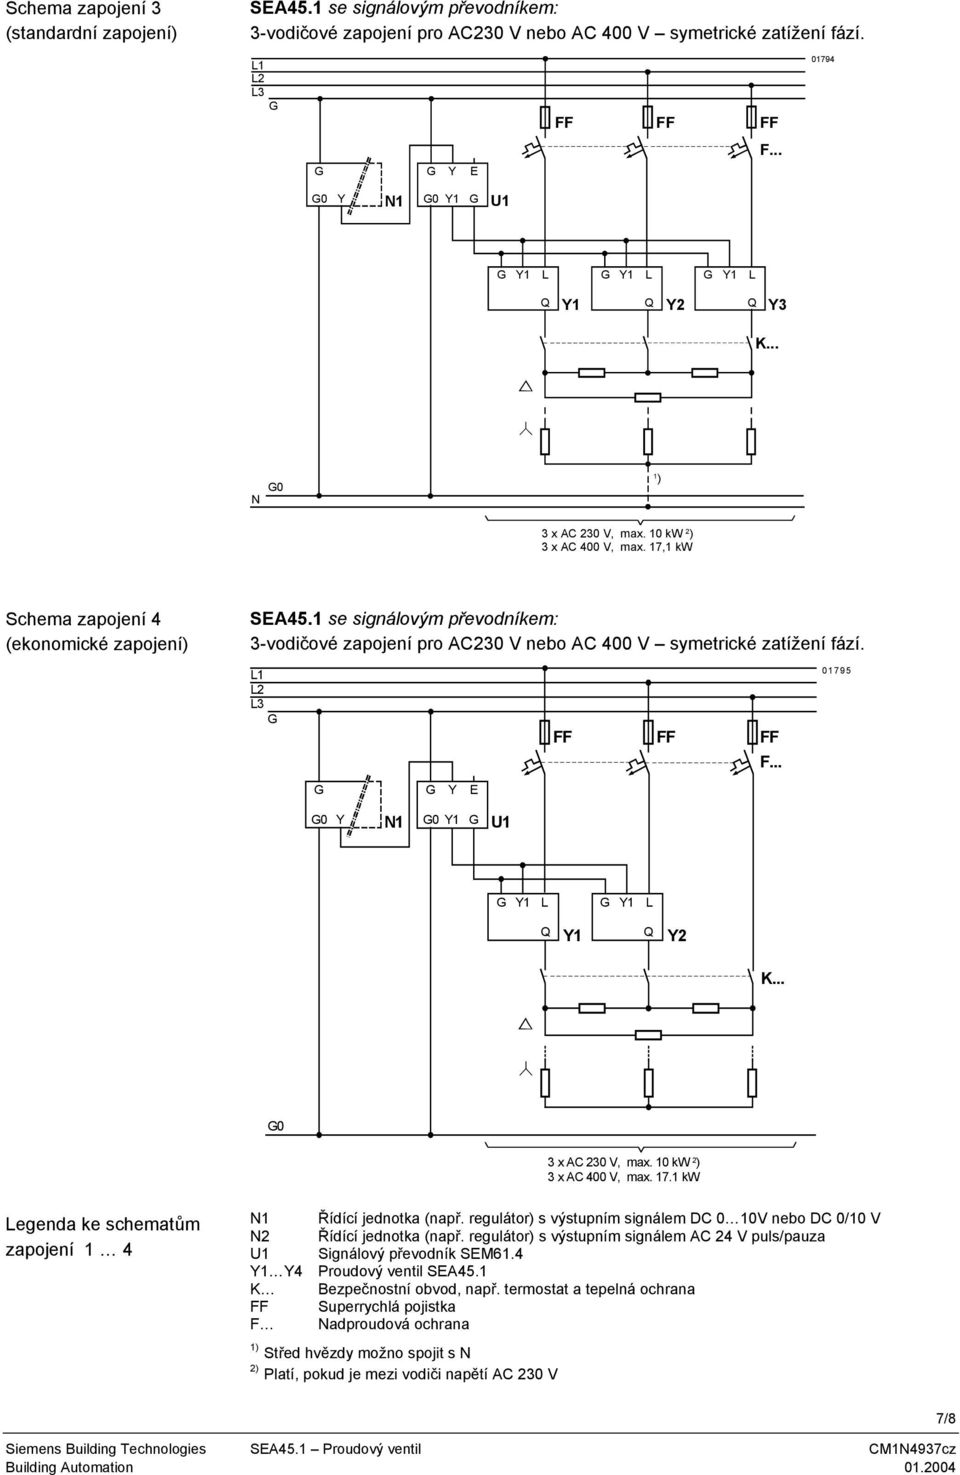 1 se signálovým převodníkem: 3-vodičové zapojení pro AC230 V nebo AC 400 V symetrické zatížení fází. 1 2 3 01795 E 0 N1 0 U1 2 0 3 x AC 230 V, 10 kw 2 ) 3 x AC 400 V, 17.